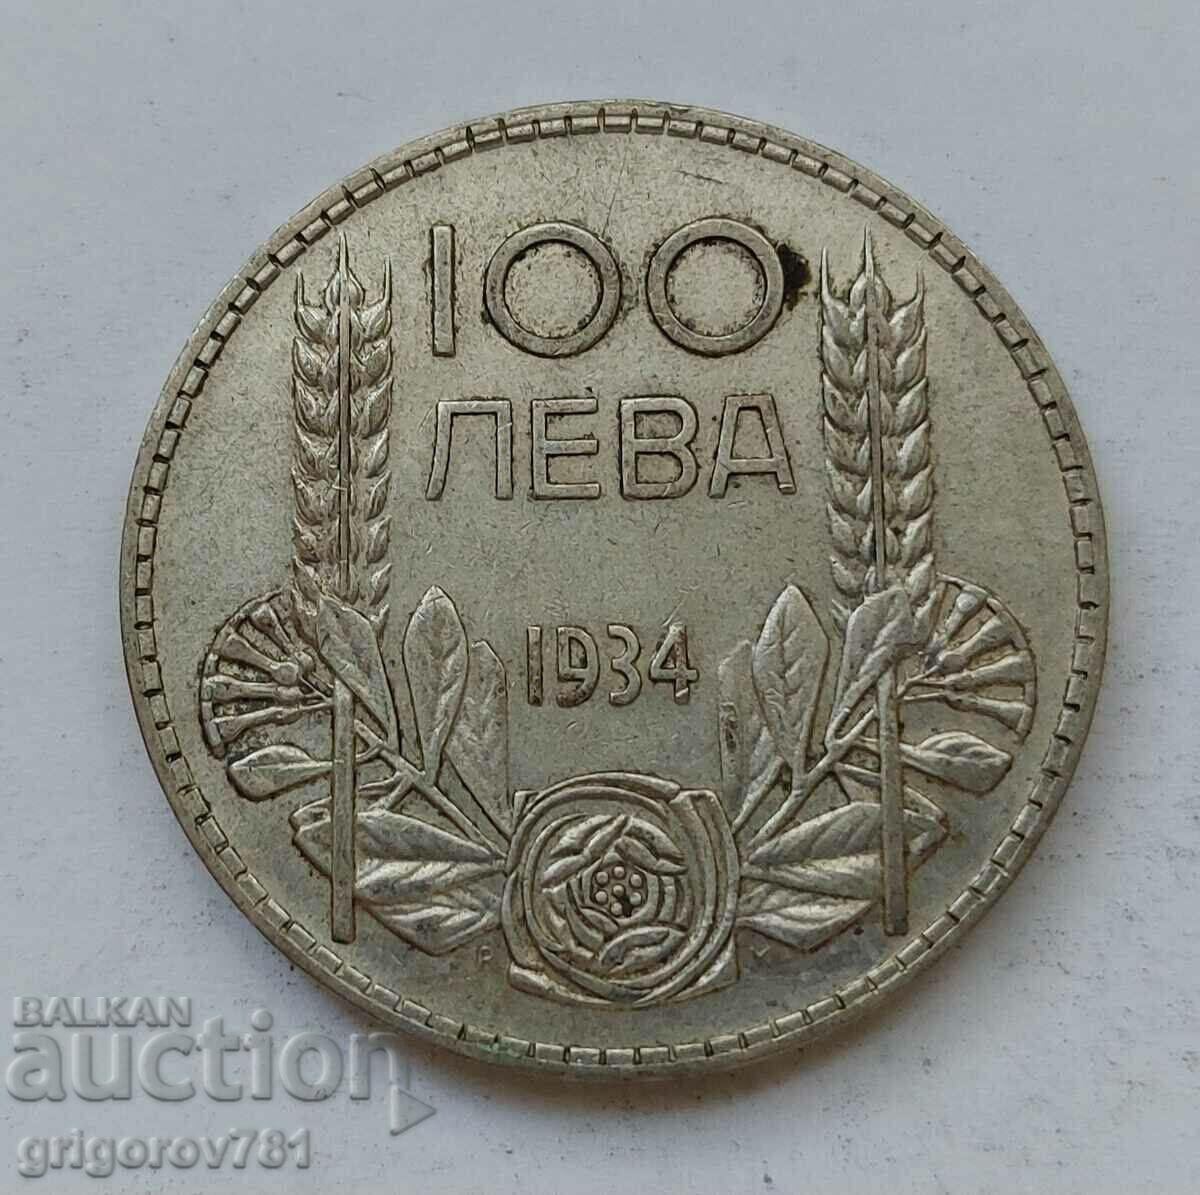 100 leva argint Bulgaria 1934 - monedă de argint #160